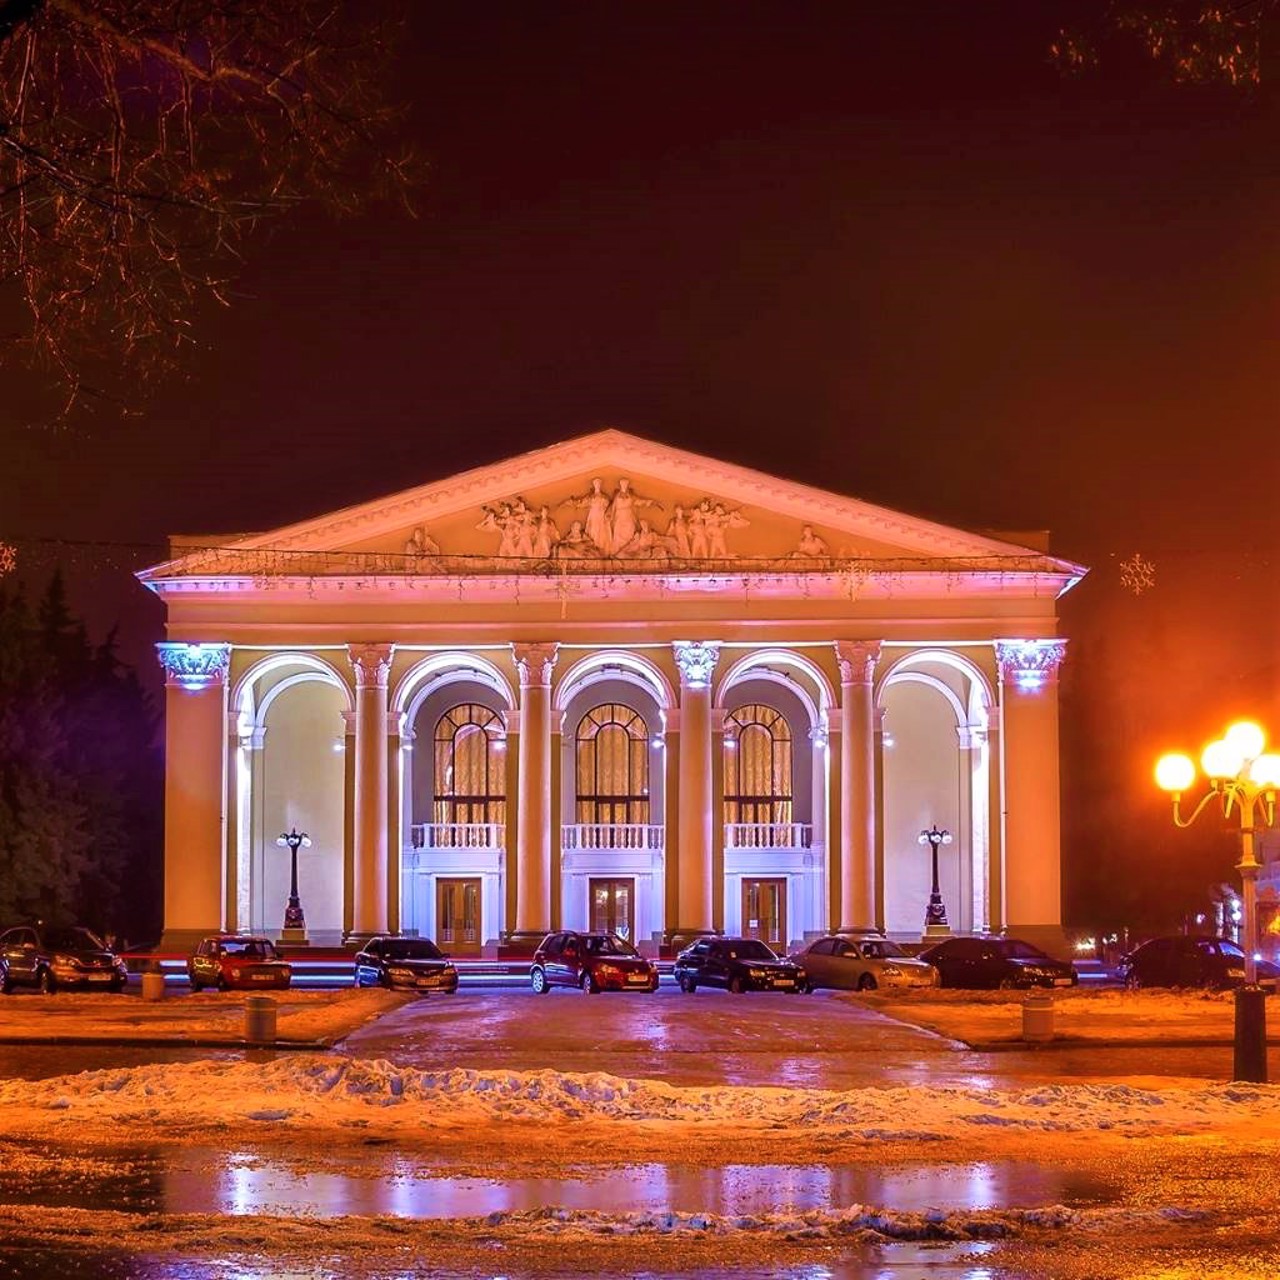 Drama Theater named Hohol, Poltava